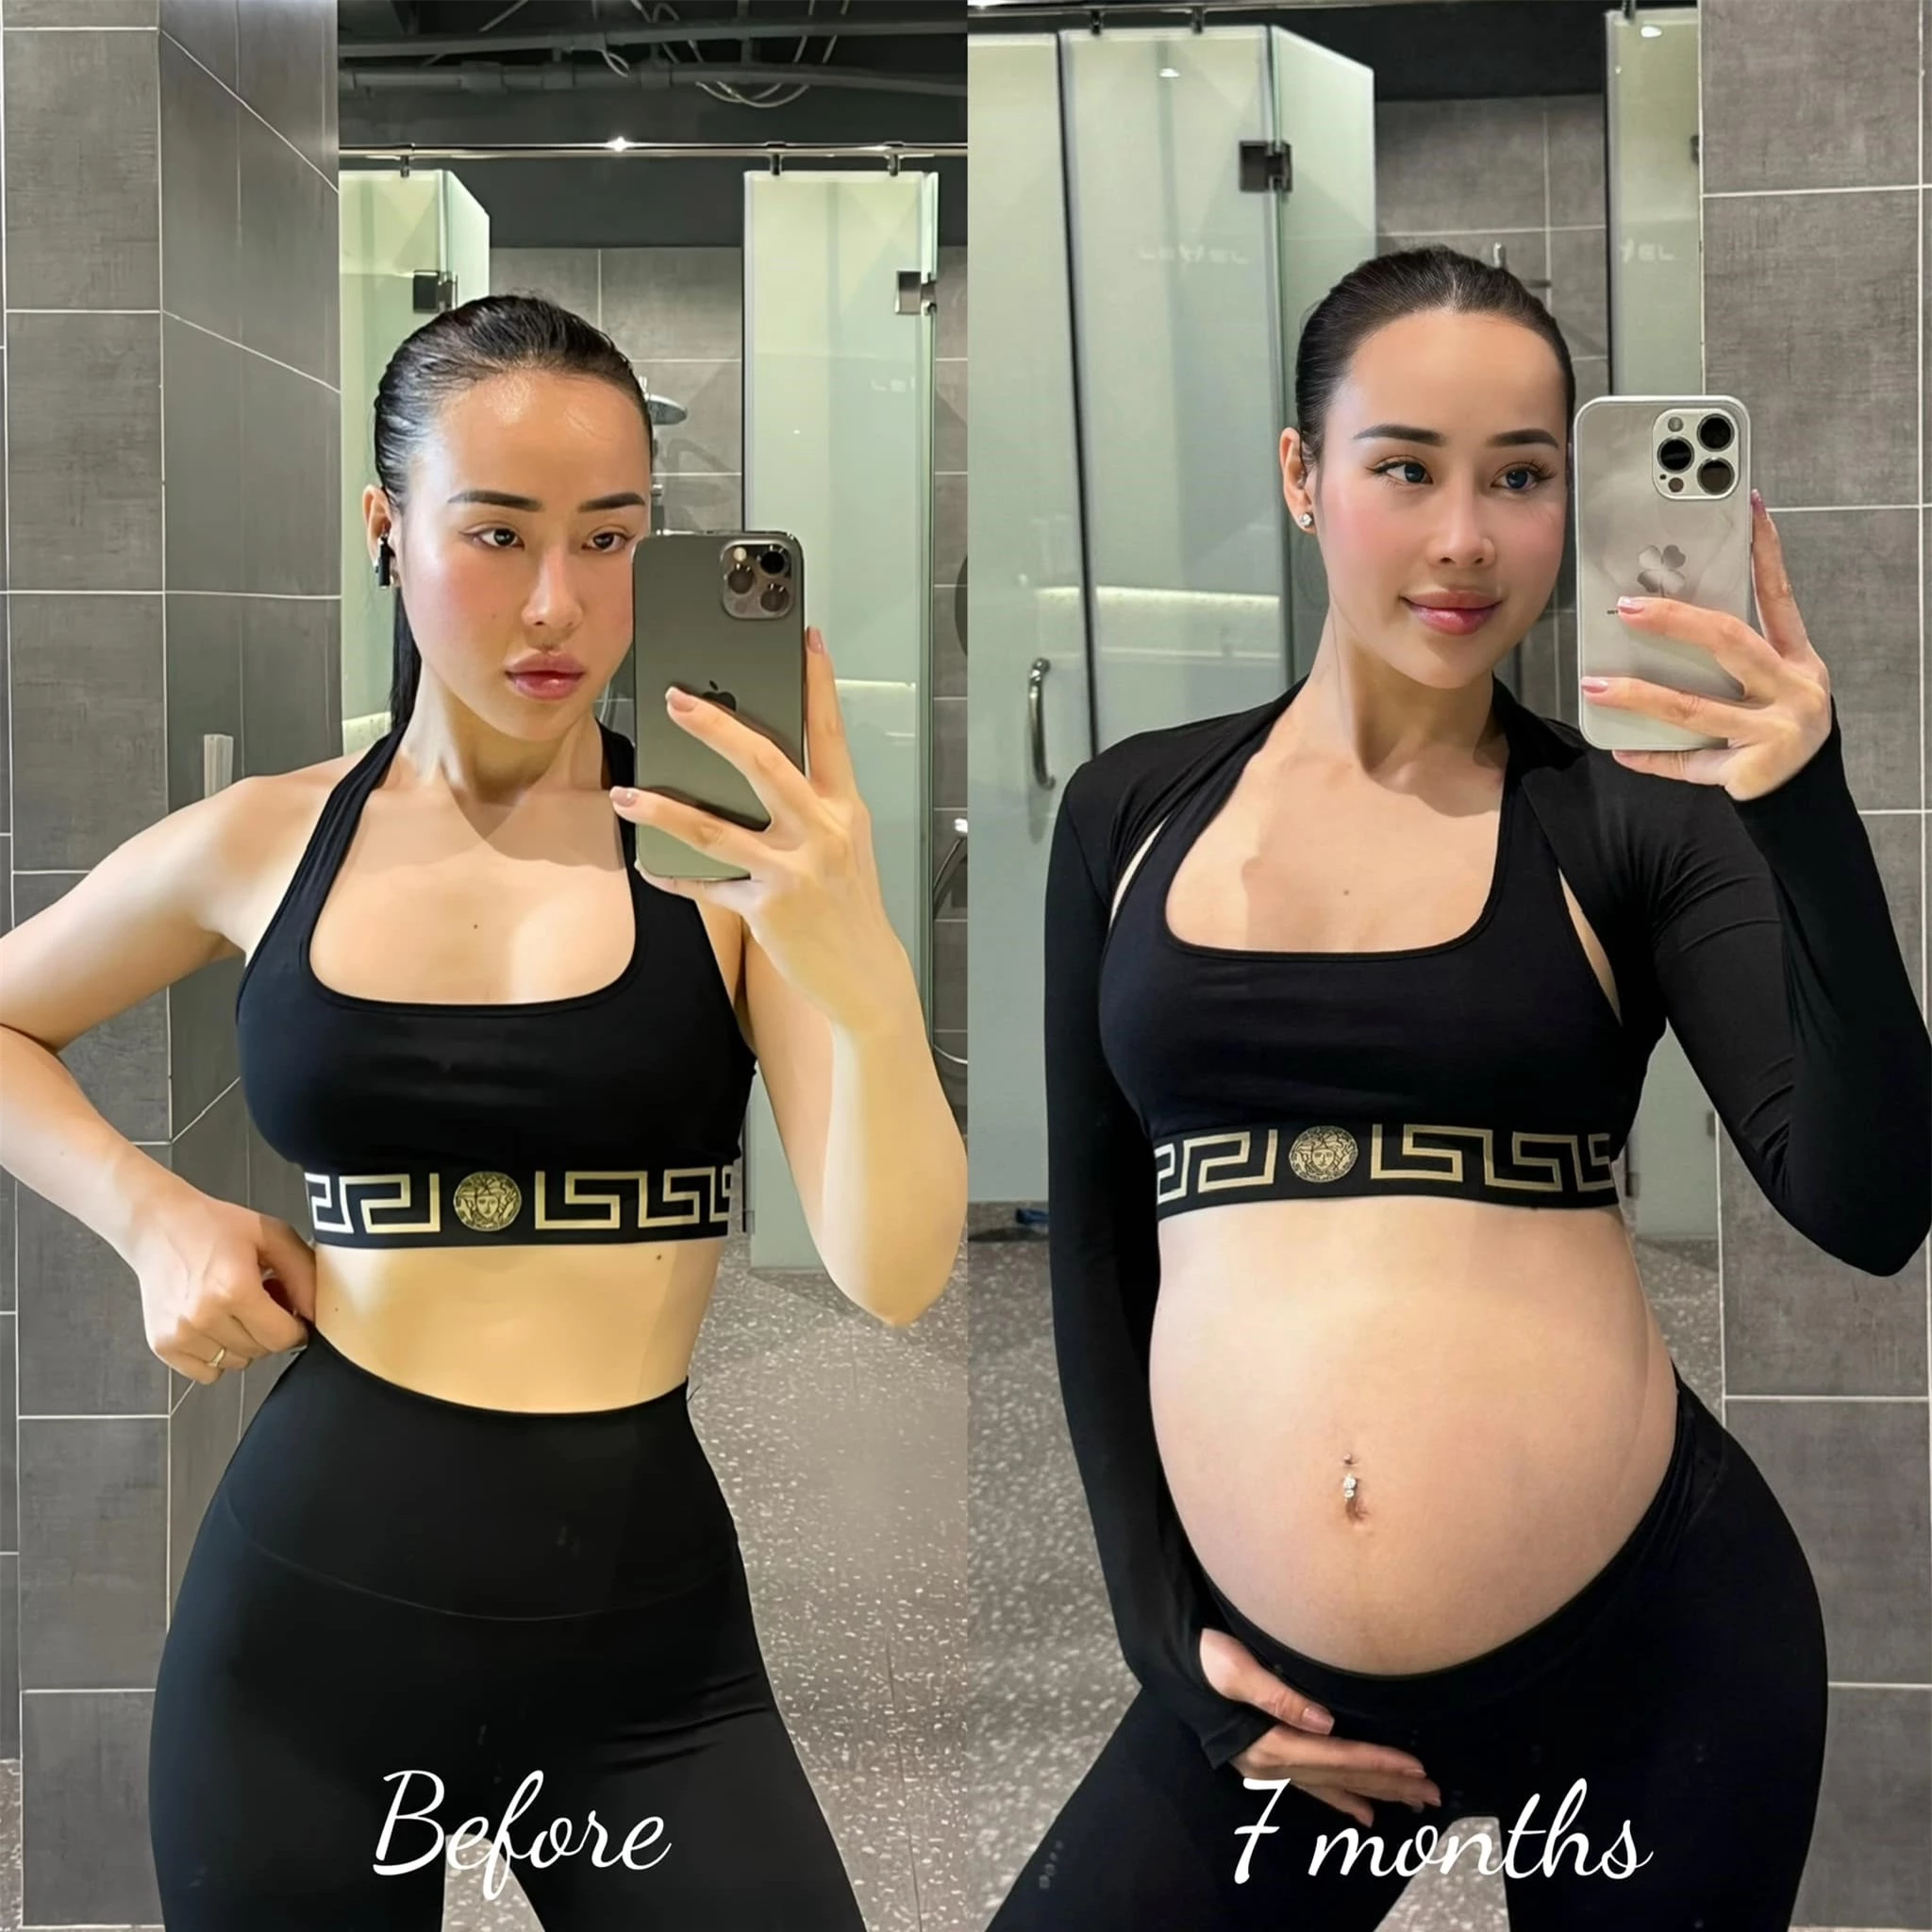 Khi hot girl đình đám làng fitness mang thai: Bầu 39 tuần vẫn nâng tạ 160kg nhìn "toát mồ hôi hột" - 4